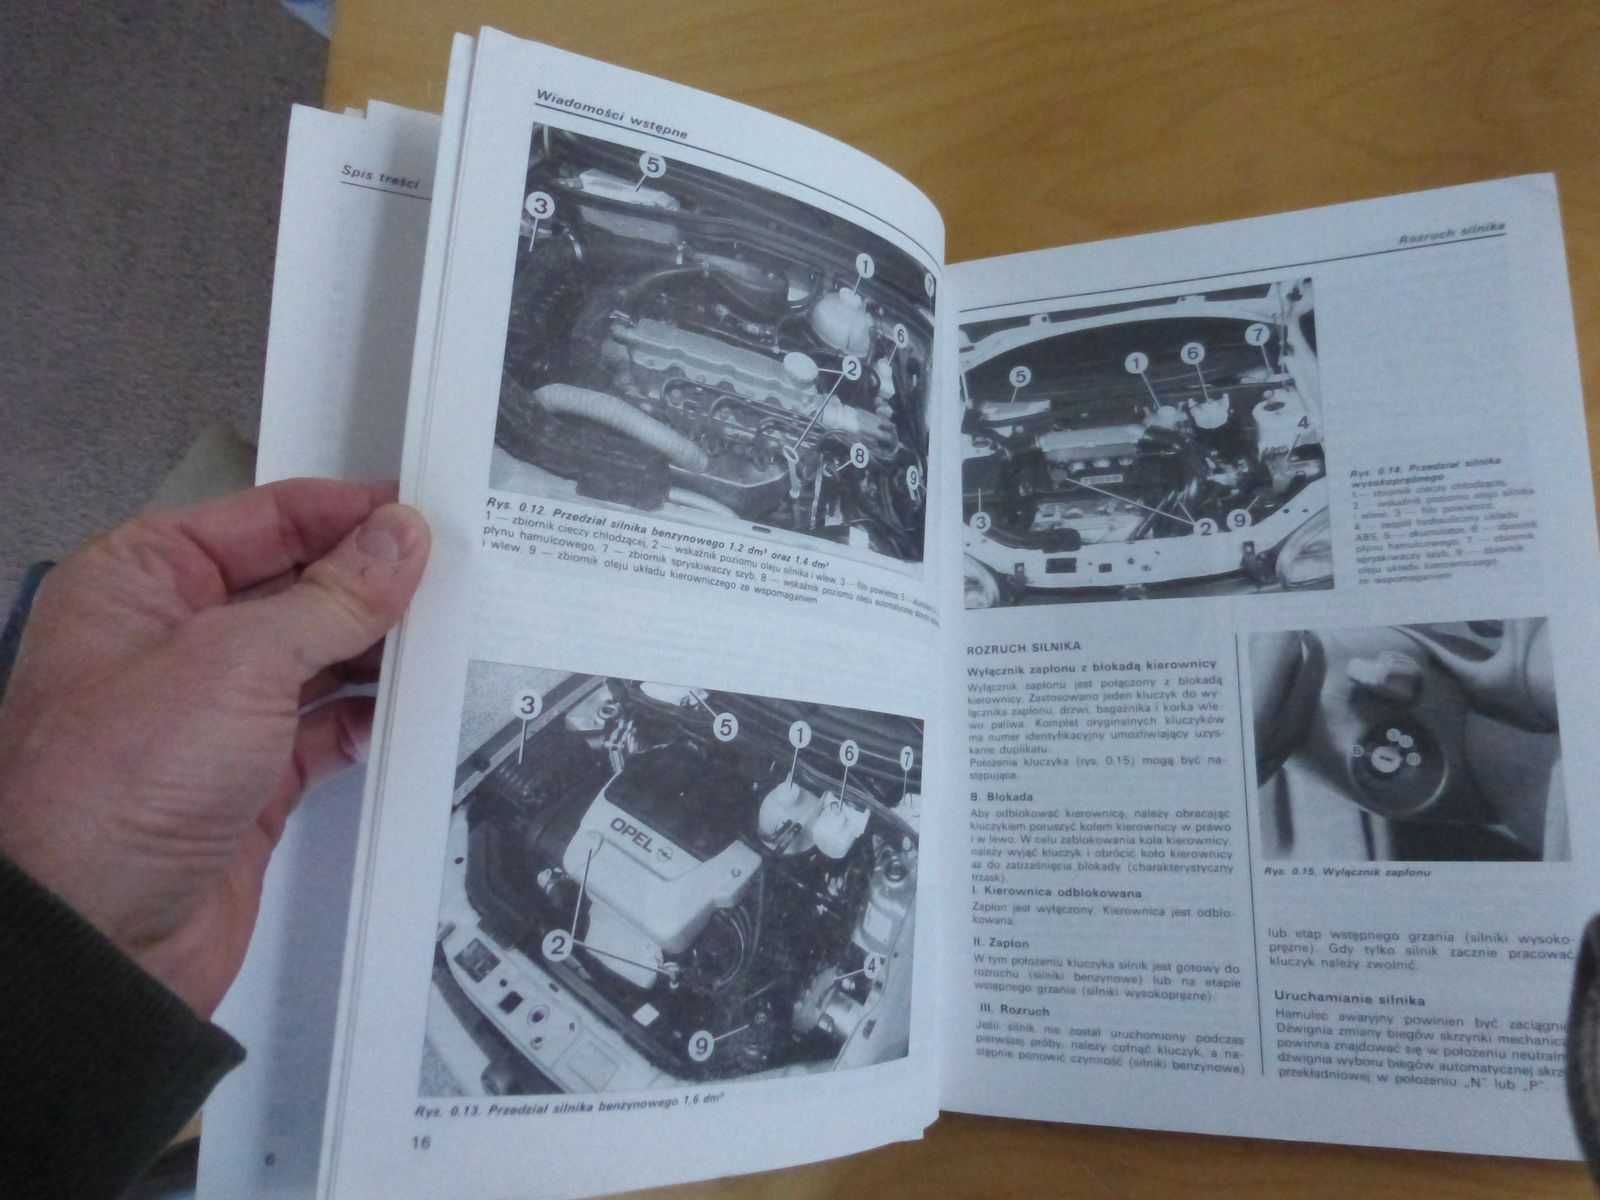 Opel Corsa instrukcja napraw - od modeli 1993. Kośmicki. 1996